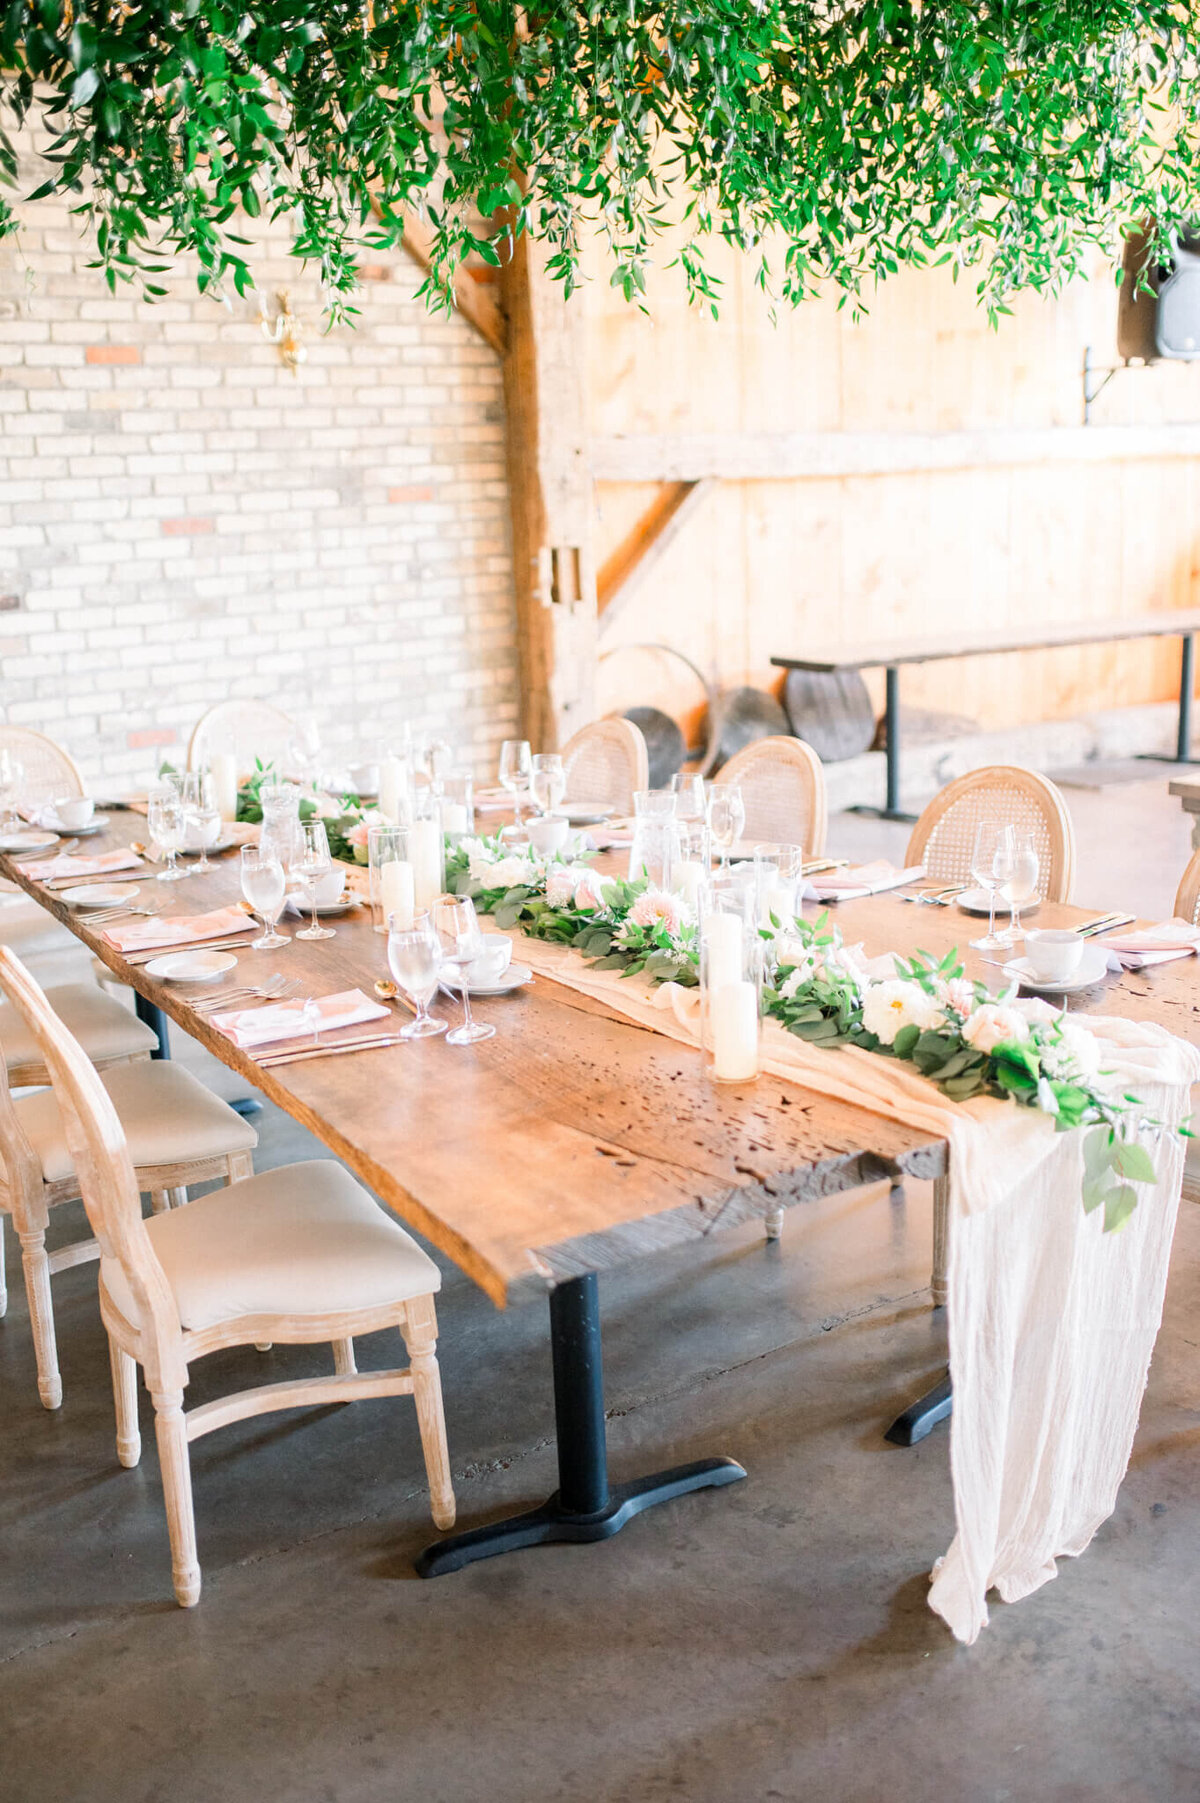 Harvest table with white runner for Toronto barn wedding